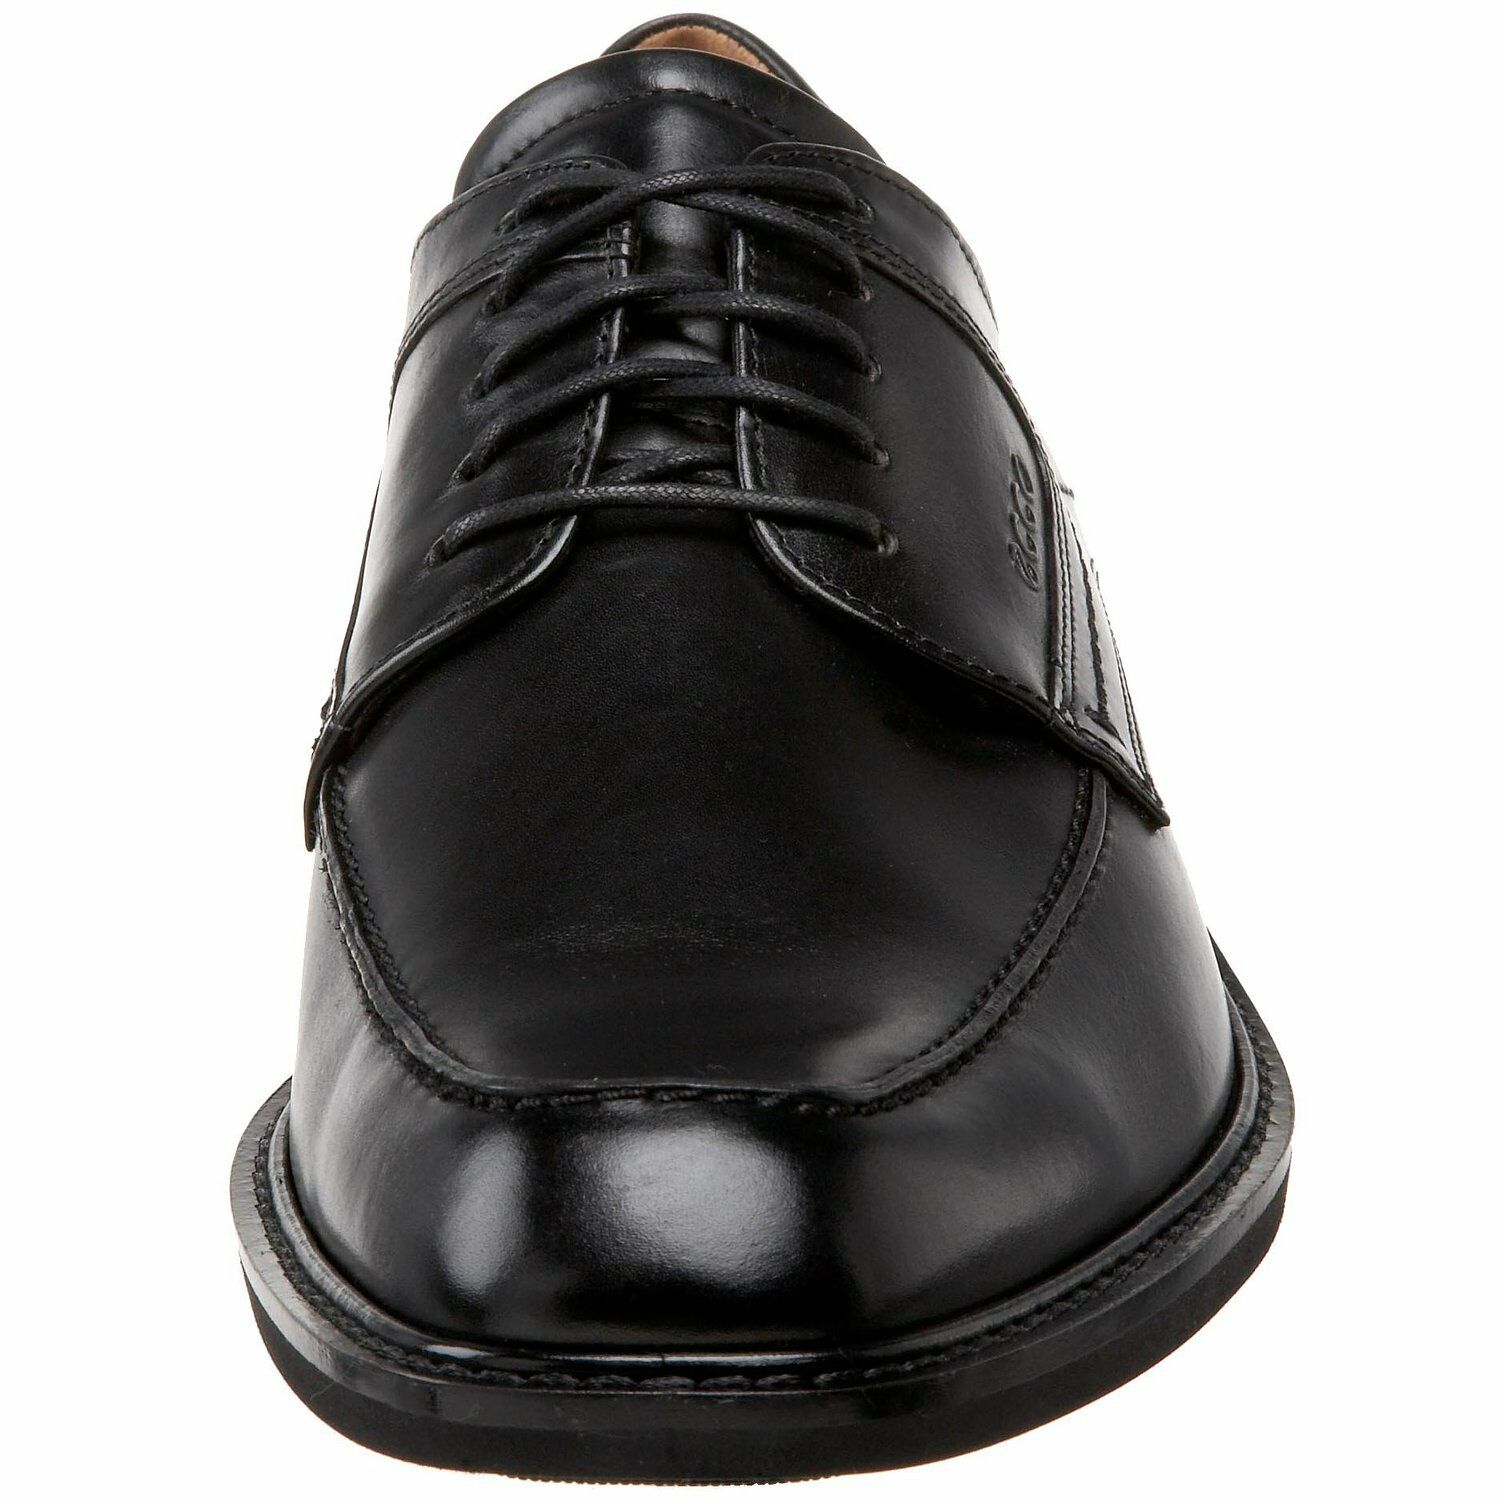 ECCO Men's 51814 Windsor Black Up Oxford - MEN'S DRESS SHOES — Soulier